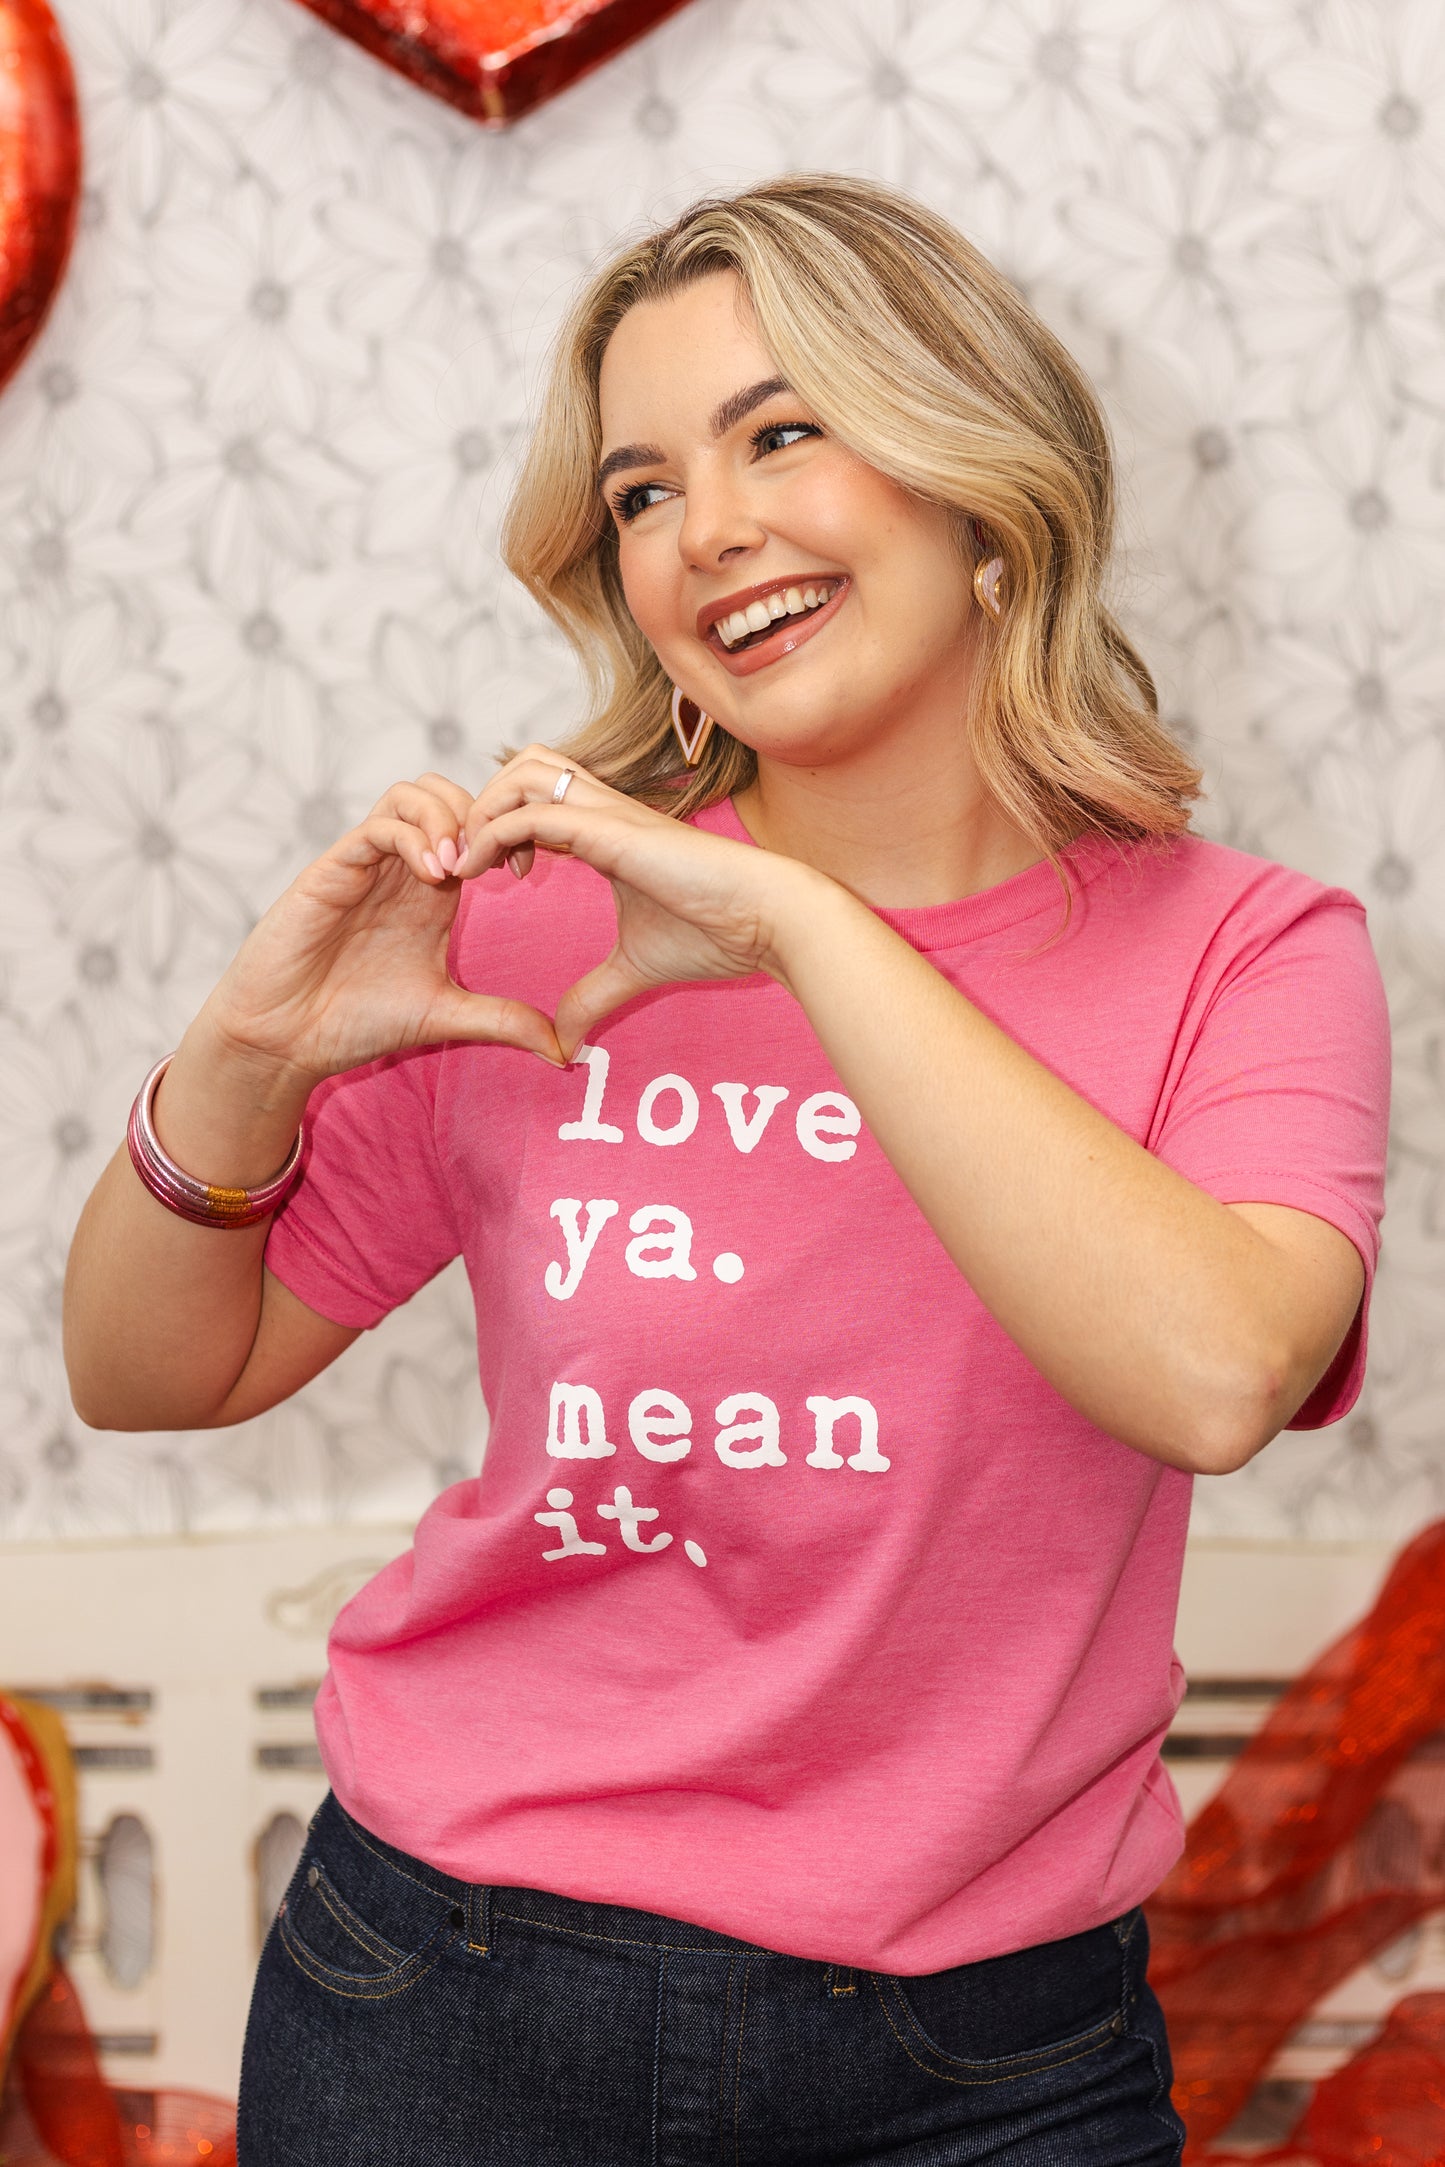 "Love ya. Mean it." T-shirt